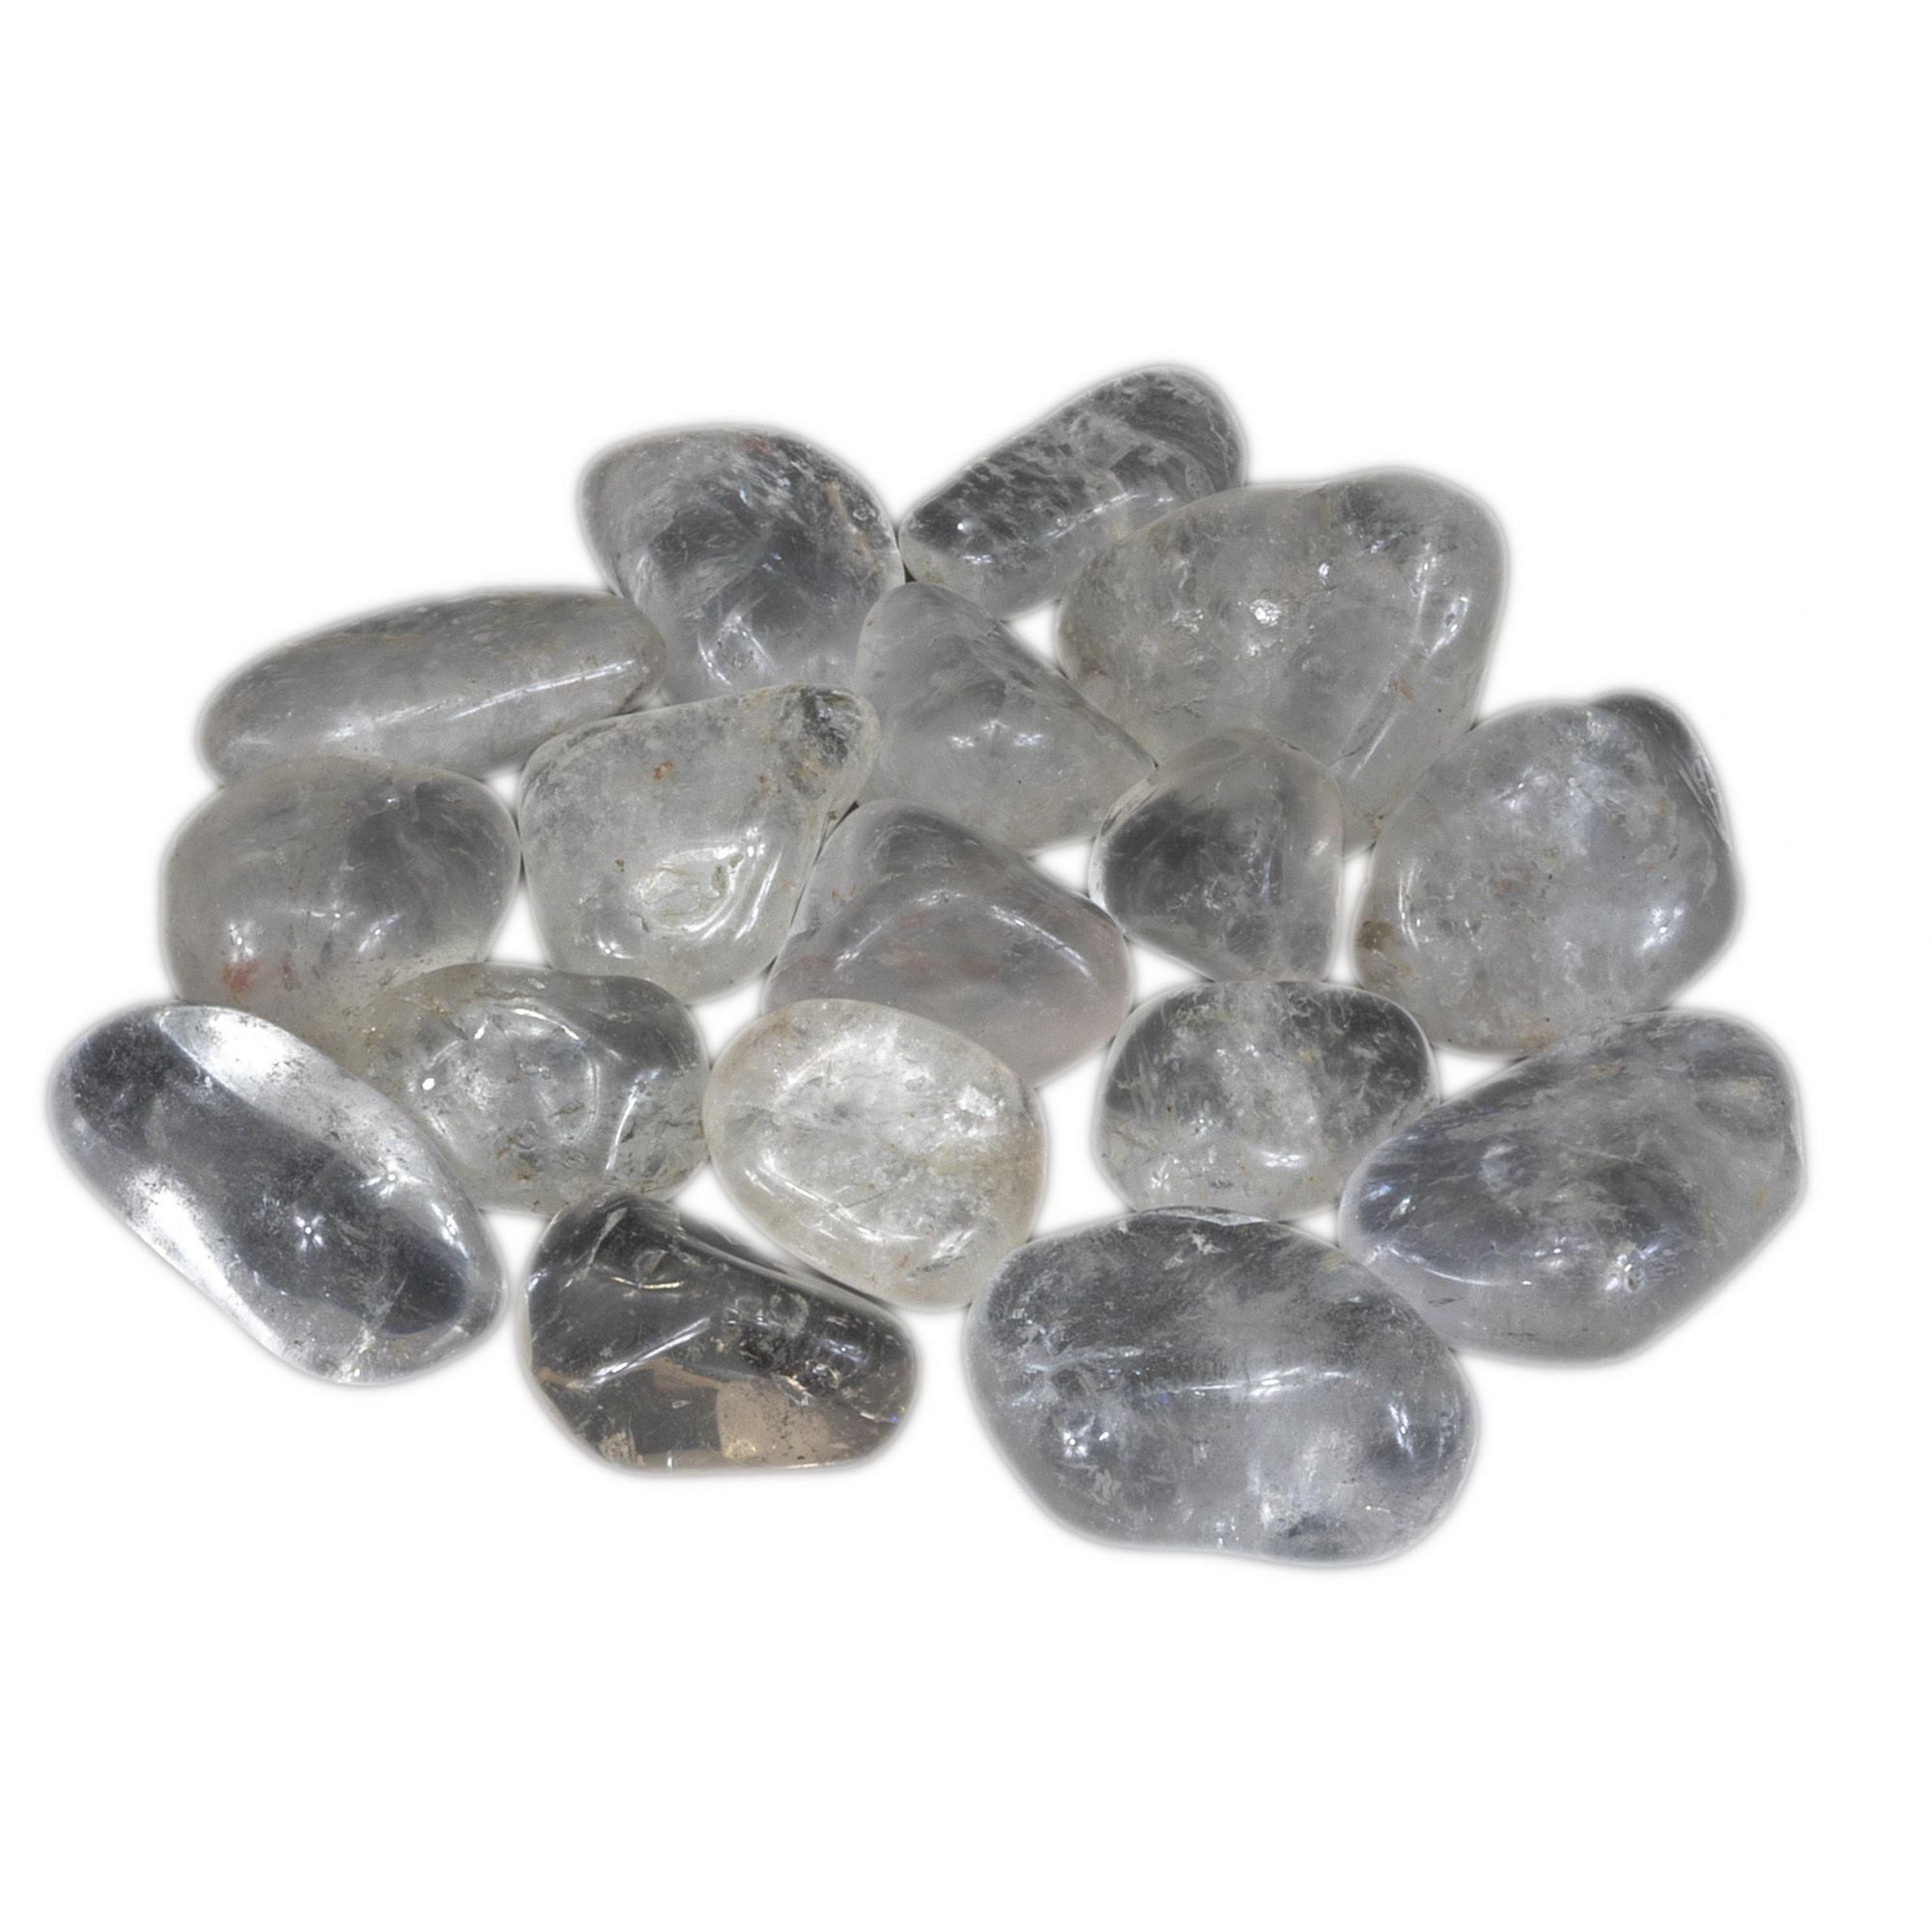 250g De Pedra Rolada De Cristal Quartzo Transparente Natural